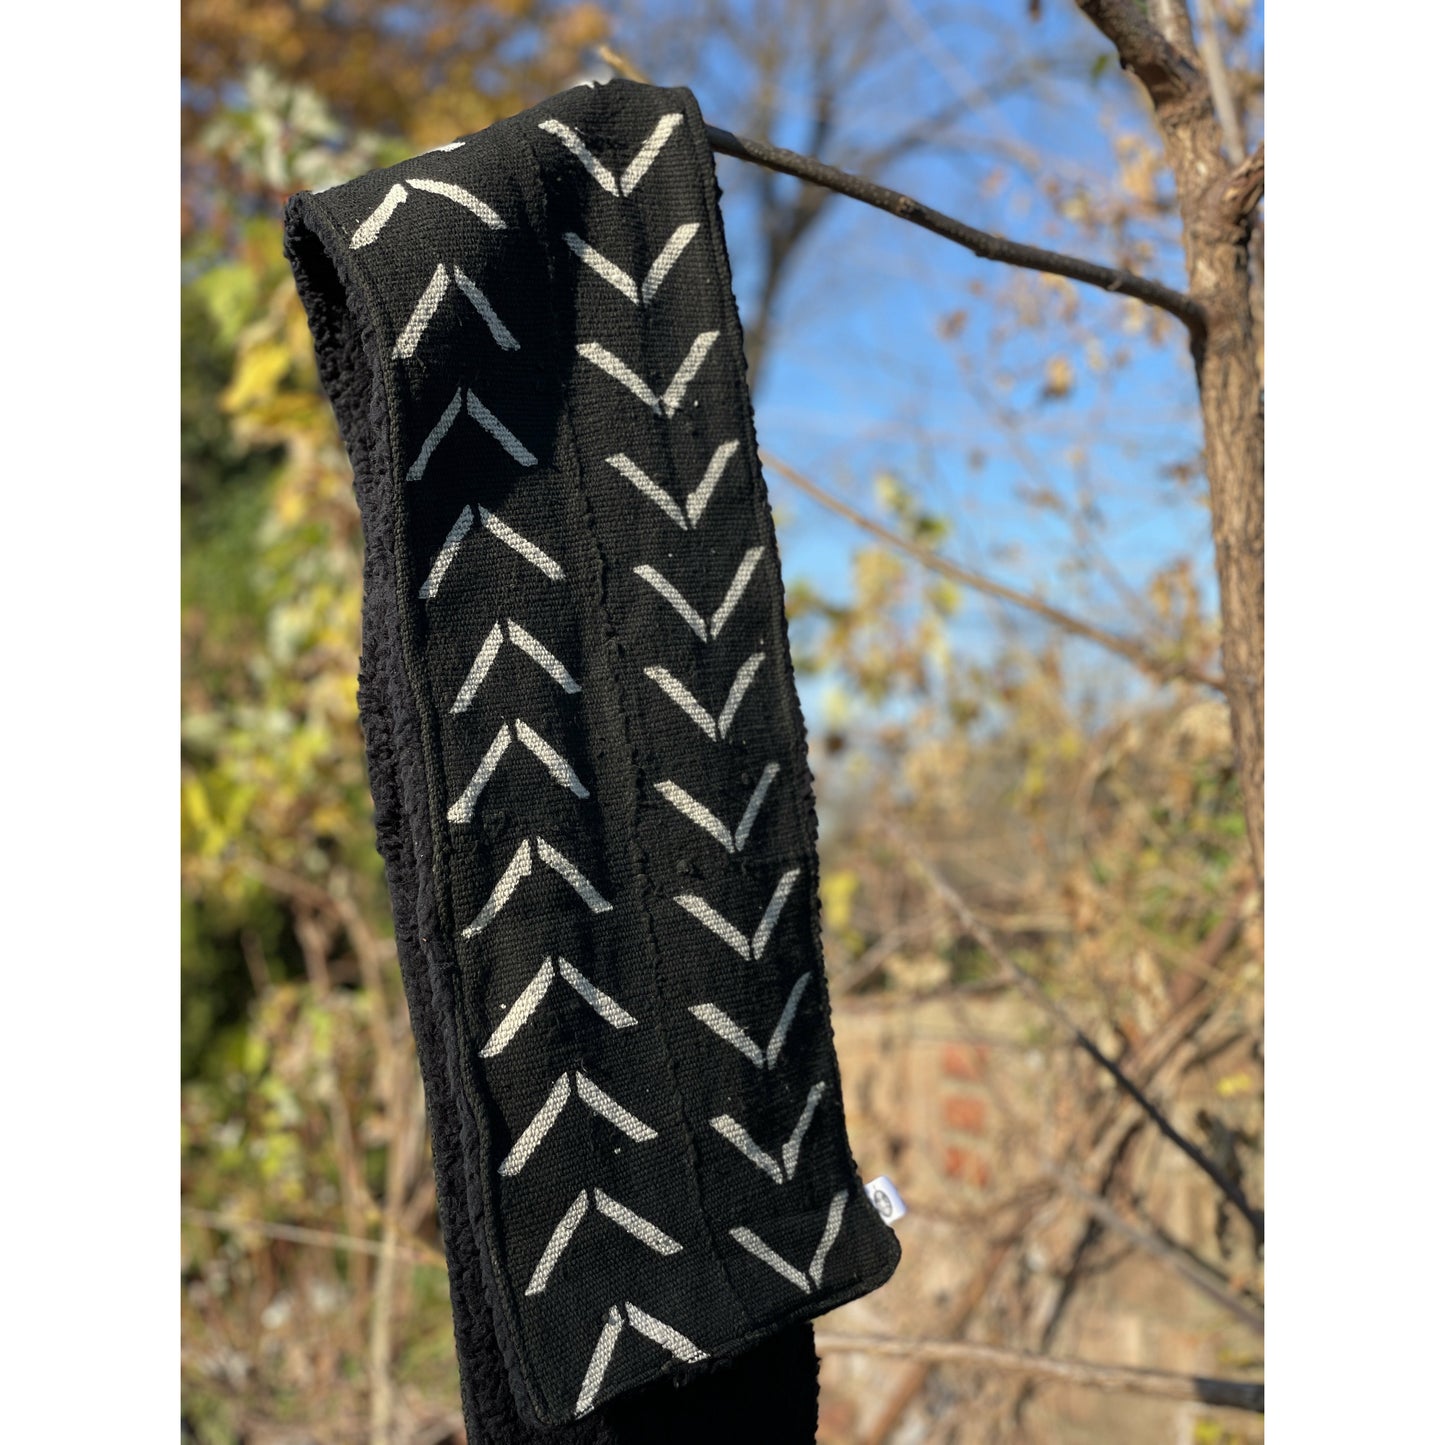 Nambili 'Isabis' Mud Cloth Scarf - Black on White - House Of Nambili